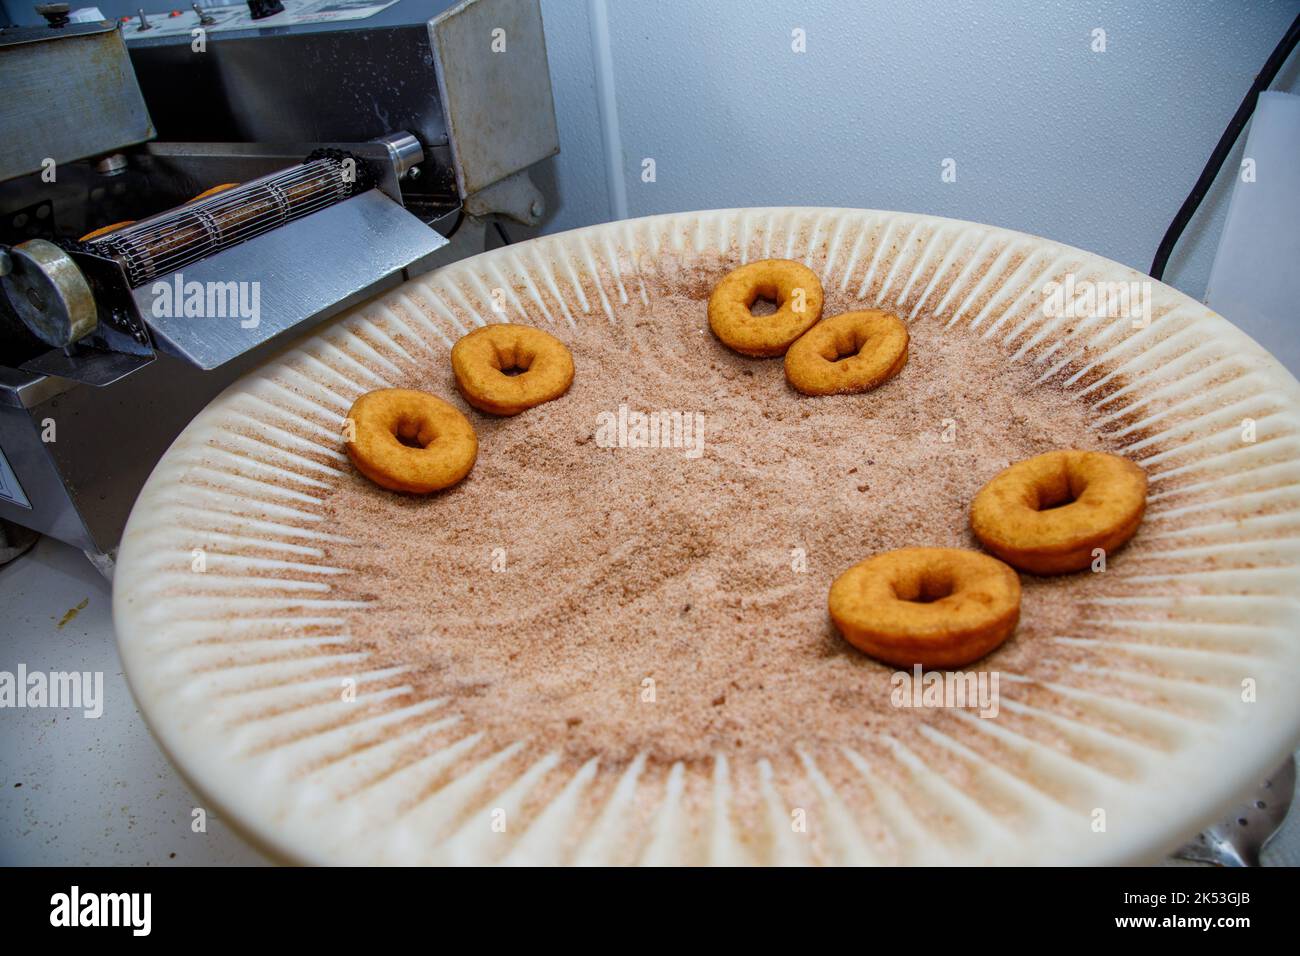 Rogers Family Orchard, Johnstown, Fulton County, Nueva York: Hacer donuts de sidra de manzana es una tradición otoñal en el norte del estado de Nueva York. Foto de stock